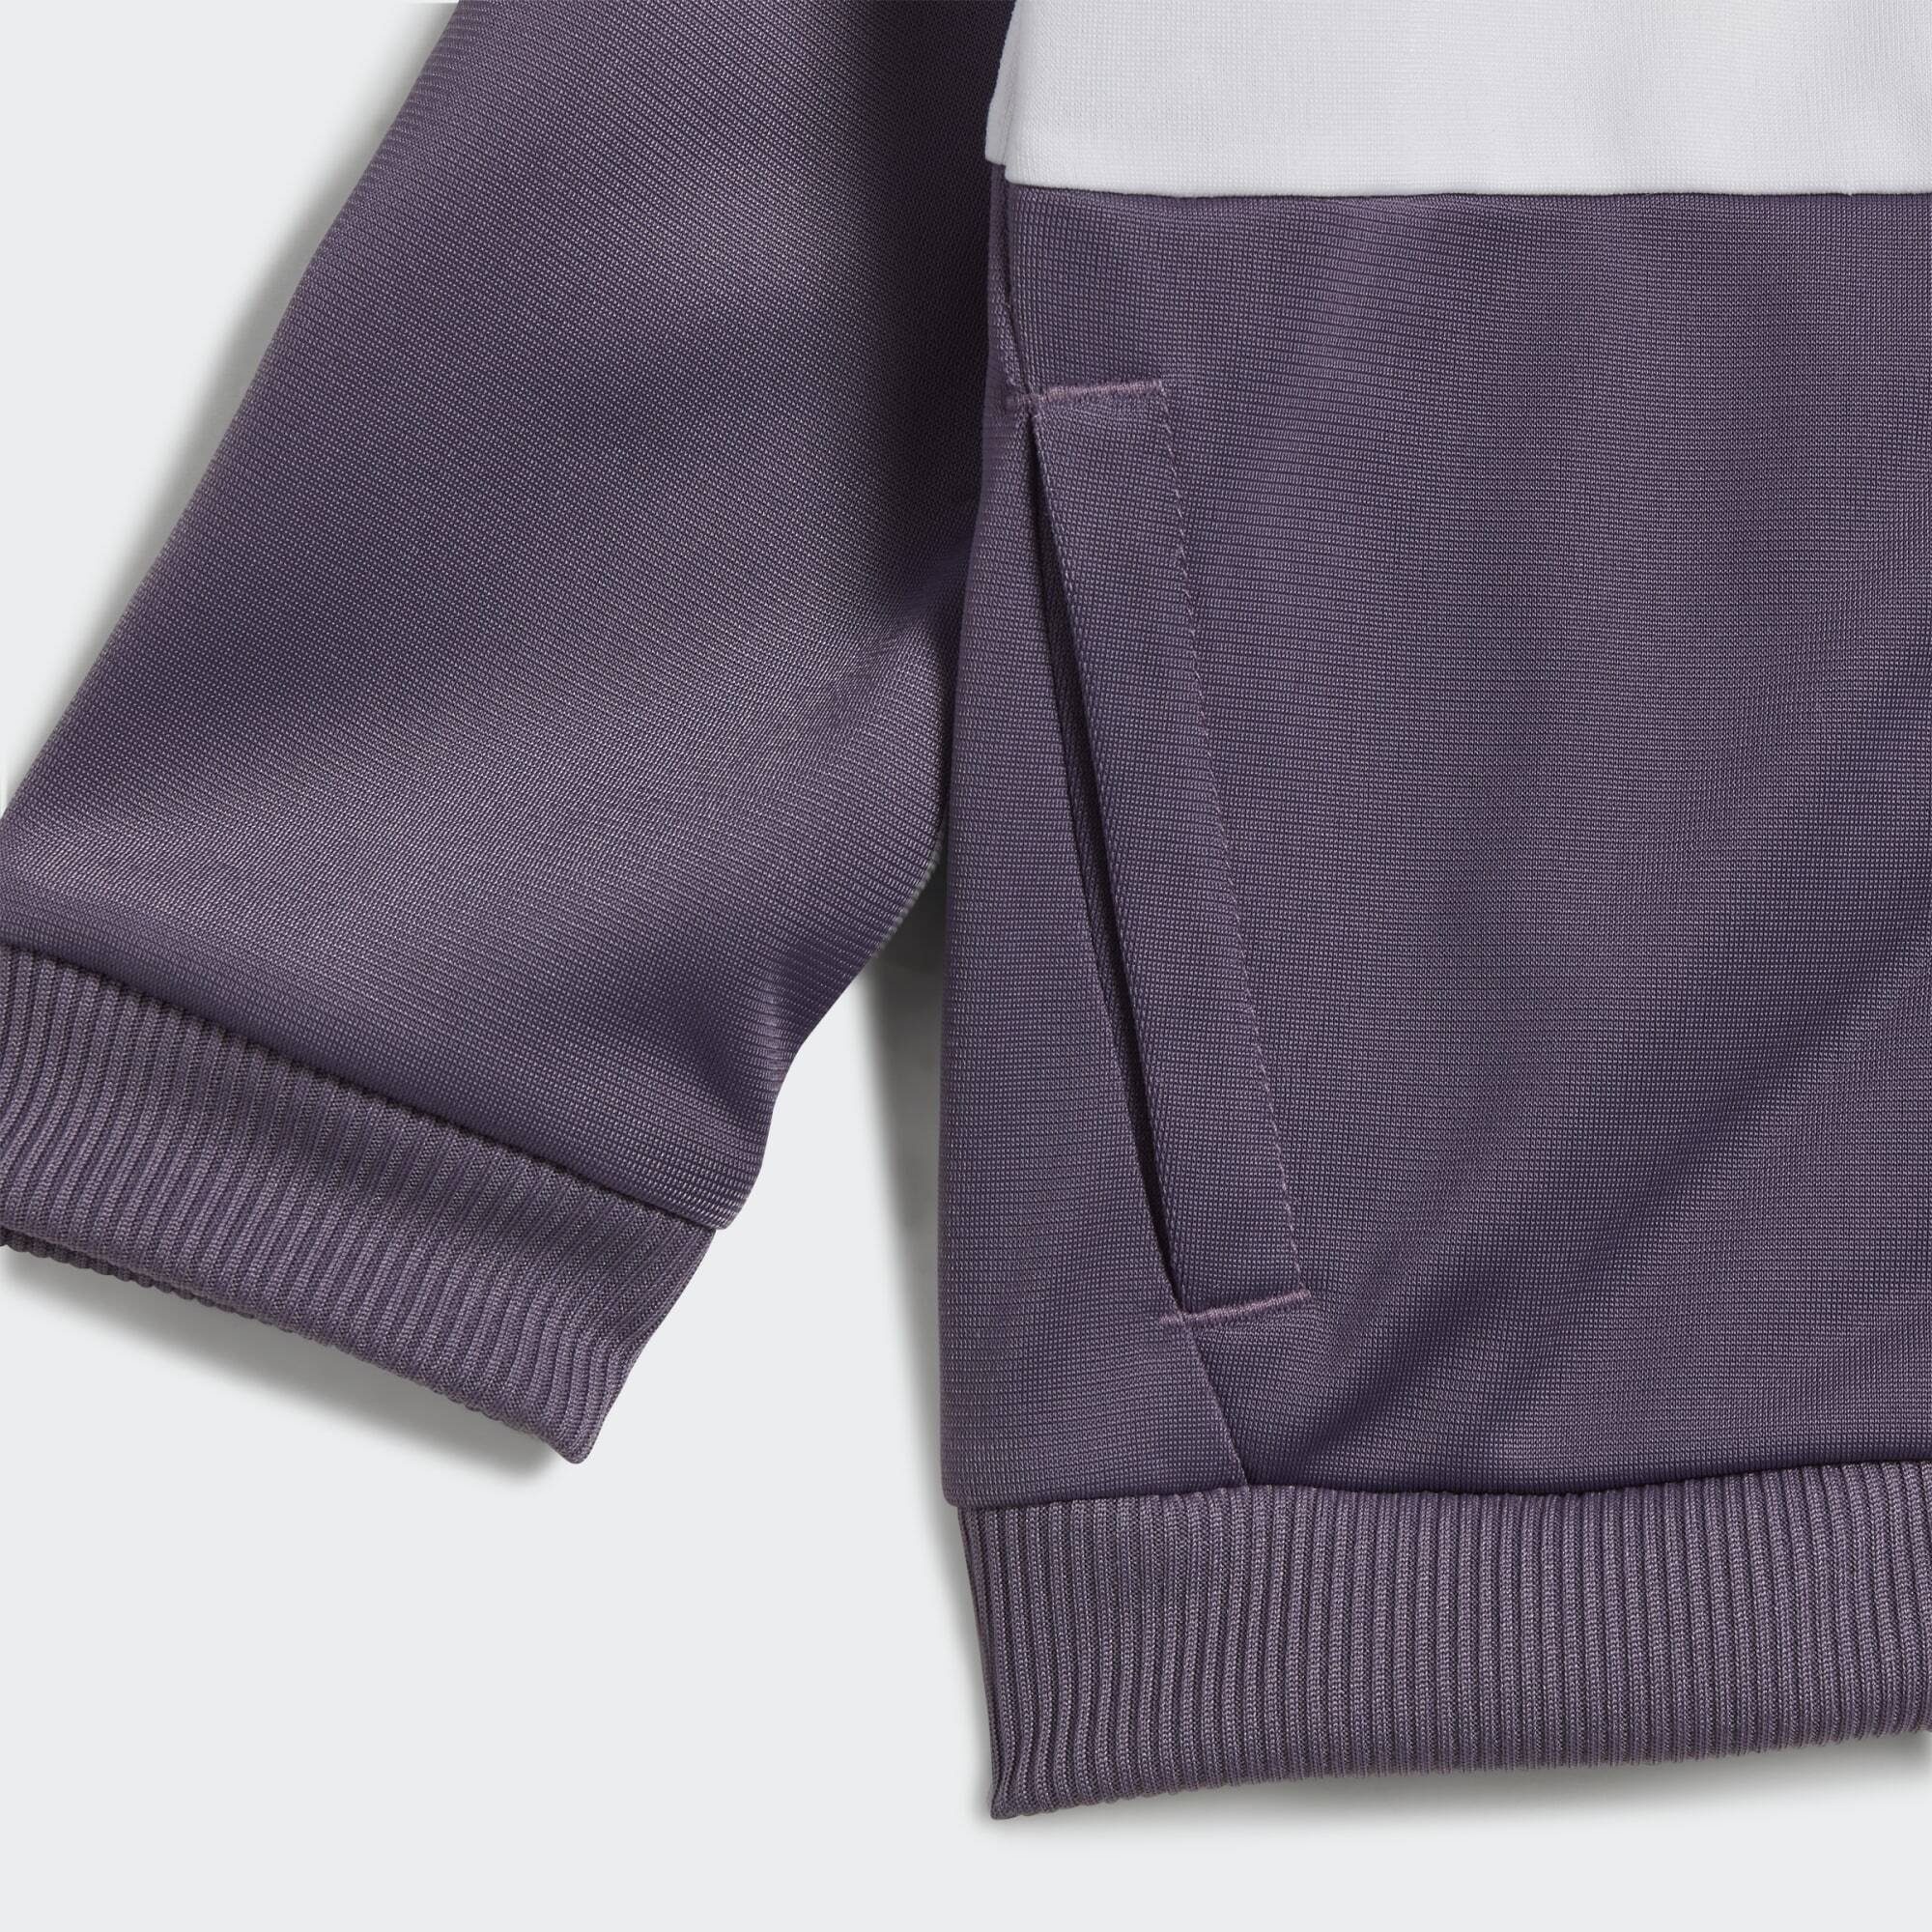 Shadow Trainingsanzug Sportswear adidas / / Clear White Violet Pink